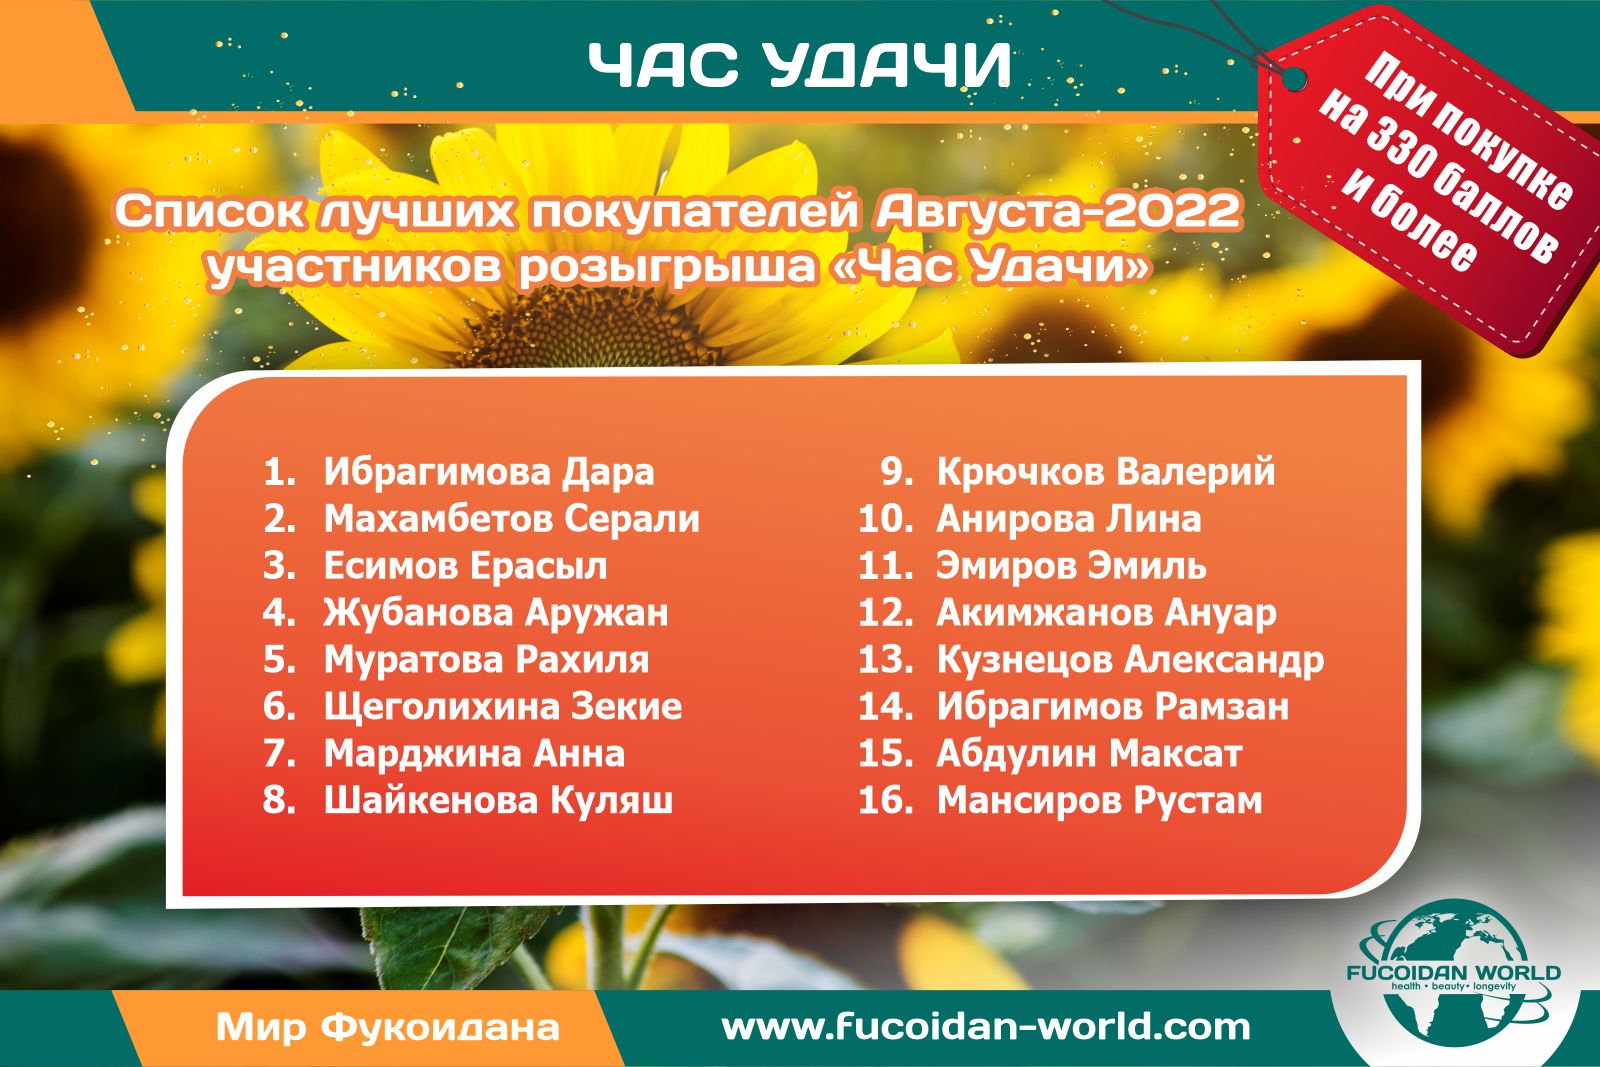 Списки участников «Часа Удачи» компании «Fucoidan World» за Август-2022